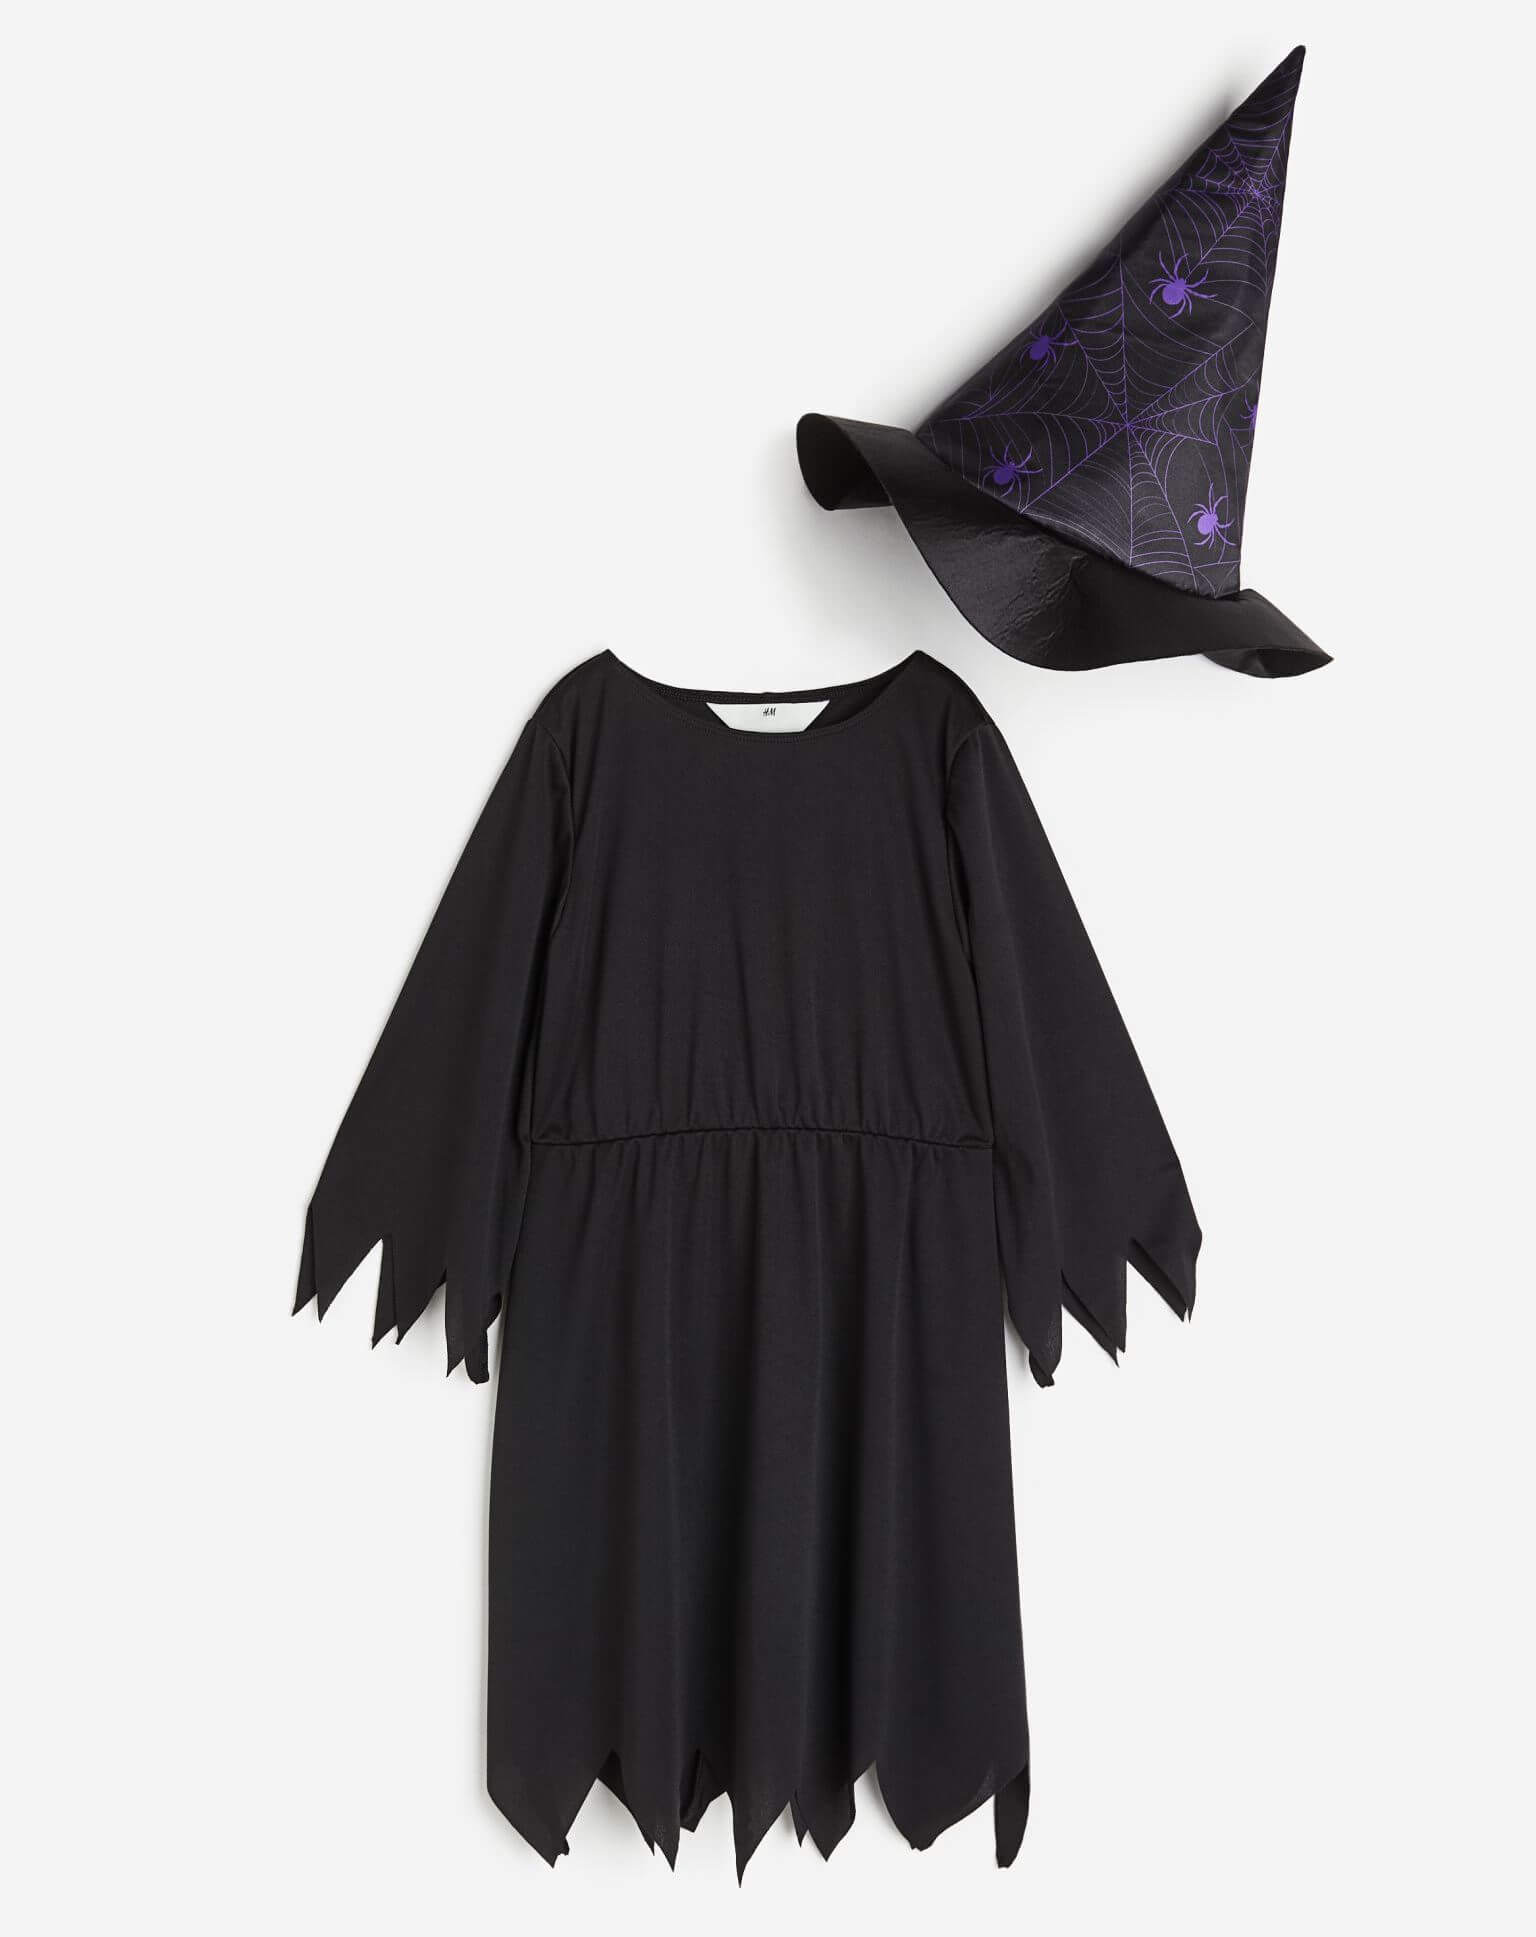 Карнавальный костюм H&M Spiders Witch, черный/фиолетовый цена и фото